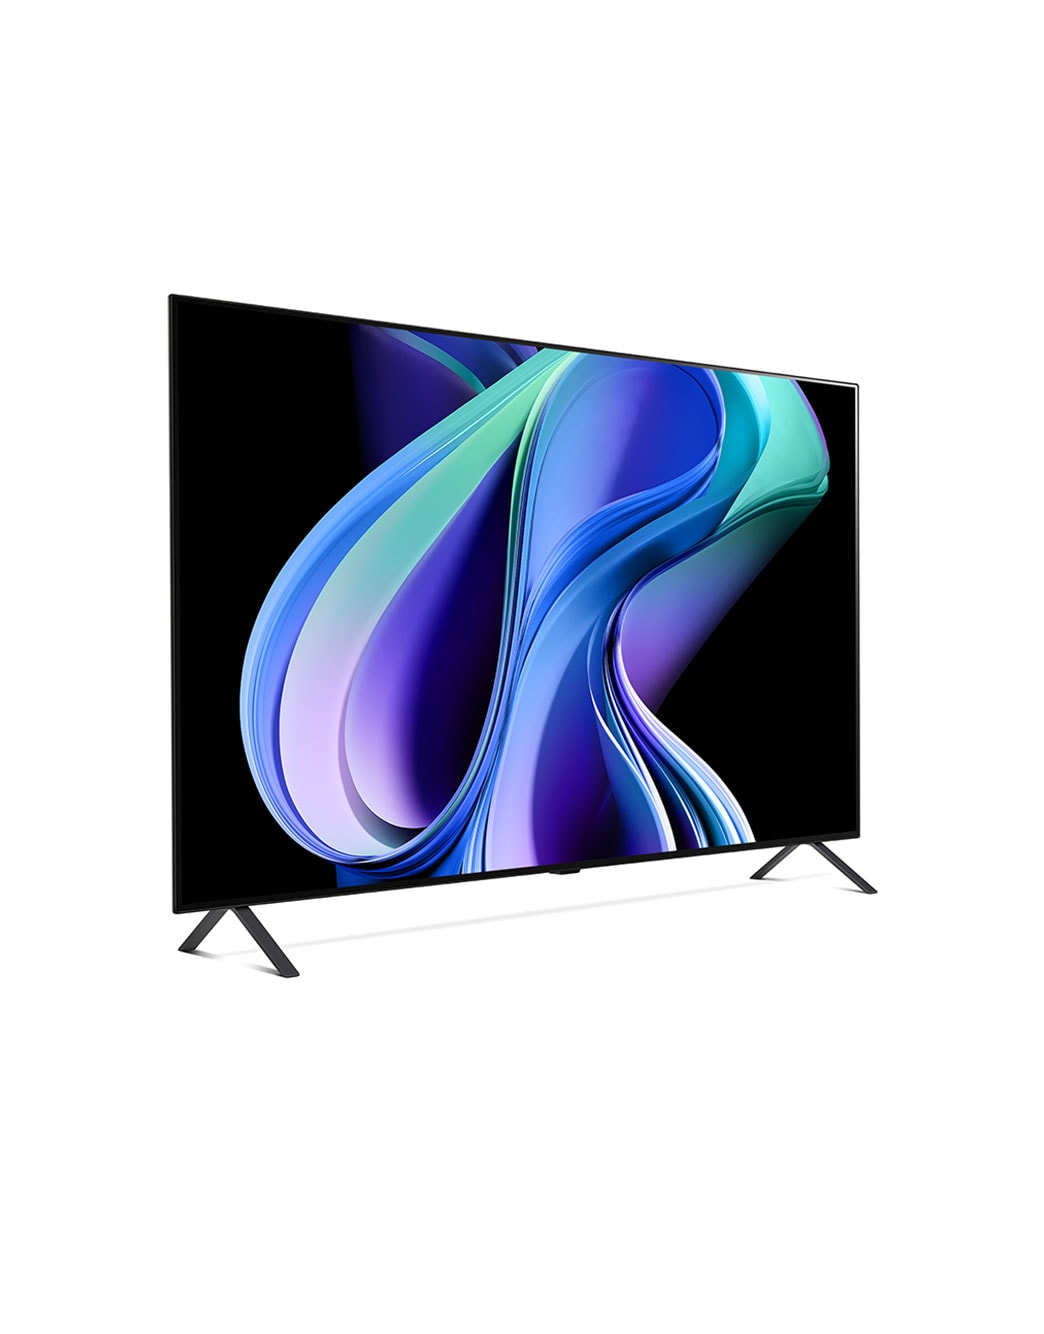 TV LG OLED A3 được nâng cấp vượt trội với kích thước 48 inch, độ phân giải 4K và tính năng Smart TV thông minh đỉnh cao. Với công nghệ OLED tiên tiến, hình ảnh sắc nét, tươi sáng và chân thực hơn bao giờ hết. Với mẫu tivi này, bạn có thể trải nghiệm hơn cả thế giới phim ảnh.